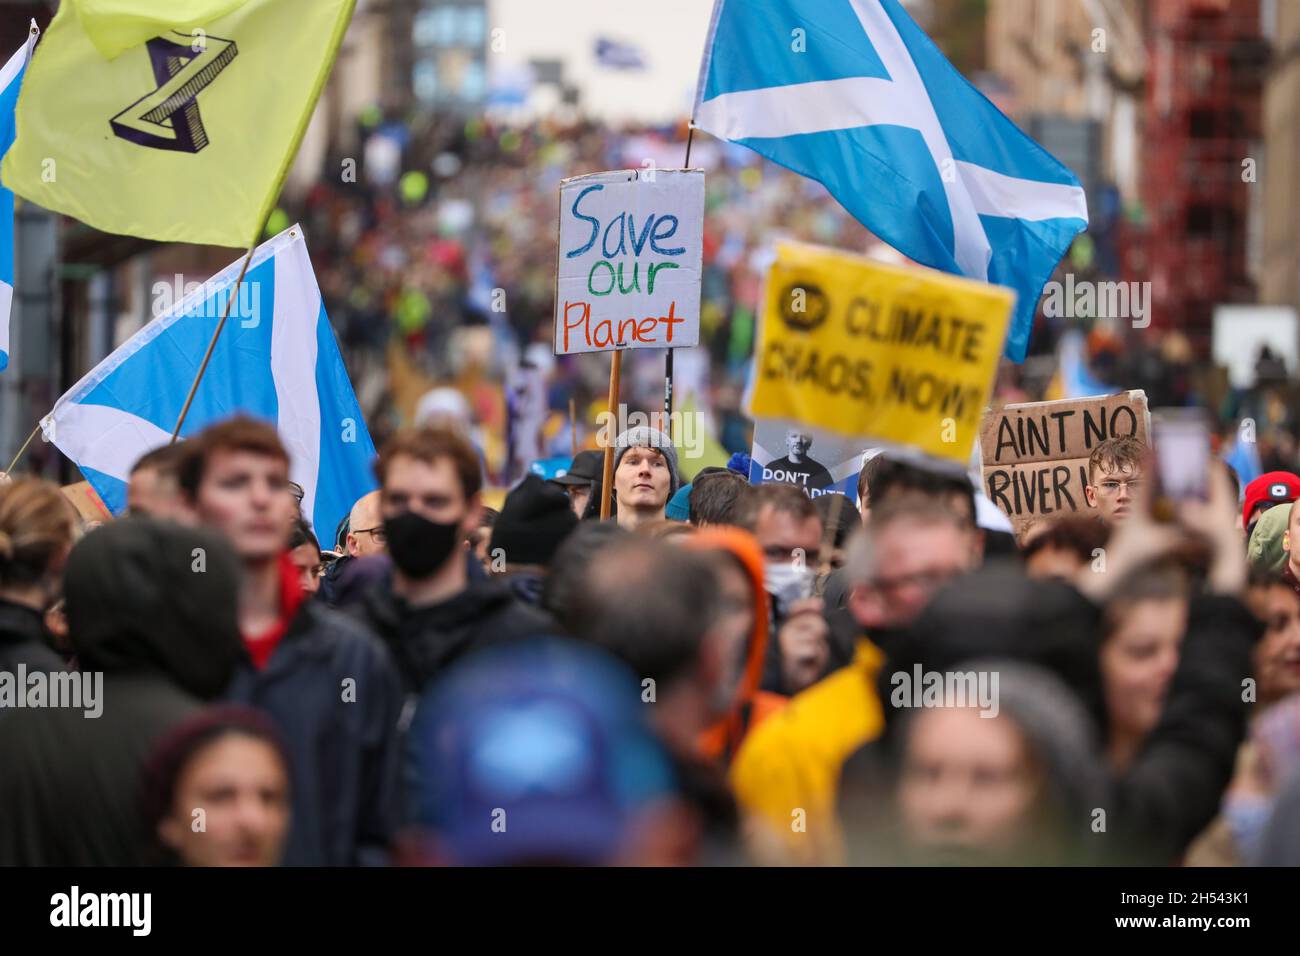 Migliaia di marzo nella Giornata Mondiale d'azione della Giustizia climatica nel centro di Glasgow, in Scozia, dove si svolge la Conferenza sul clima COP26. Foto Stock